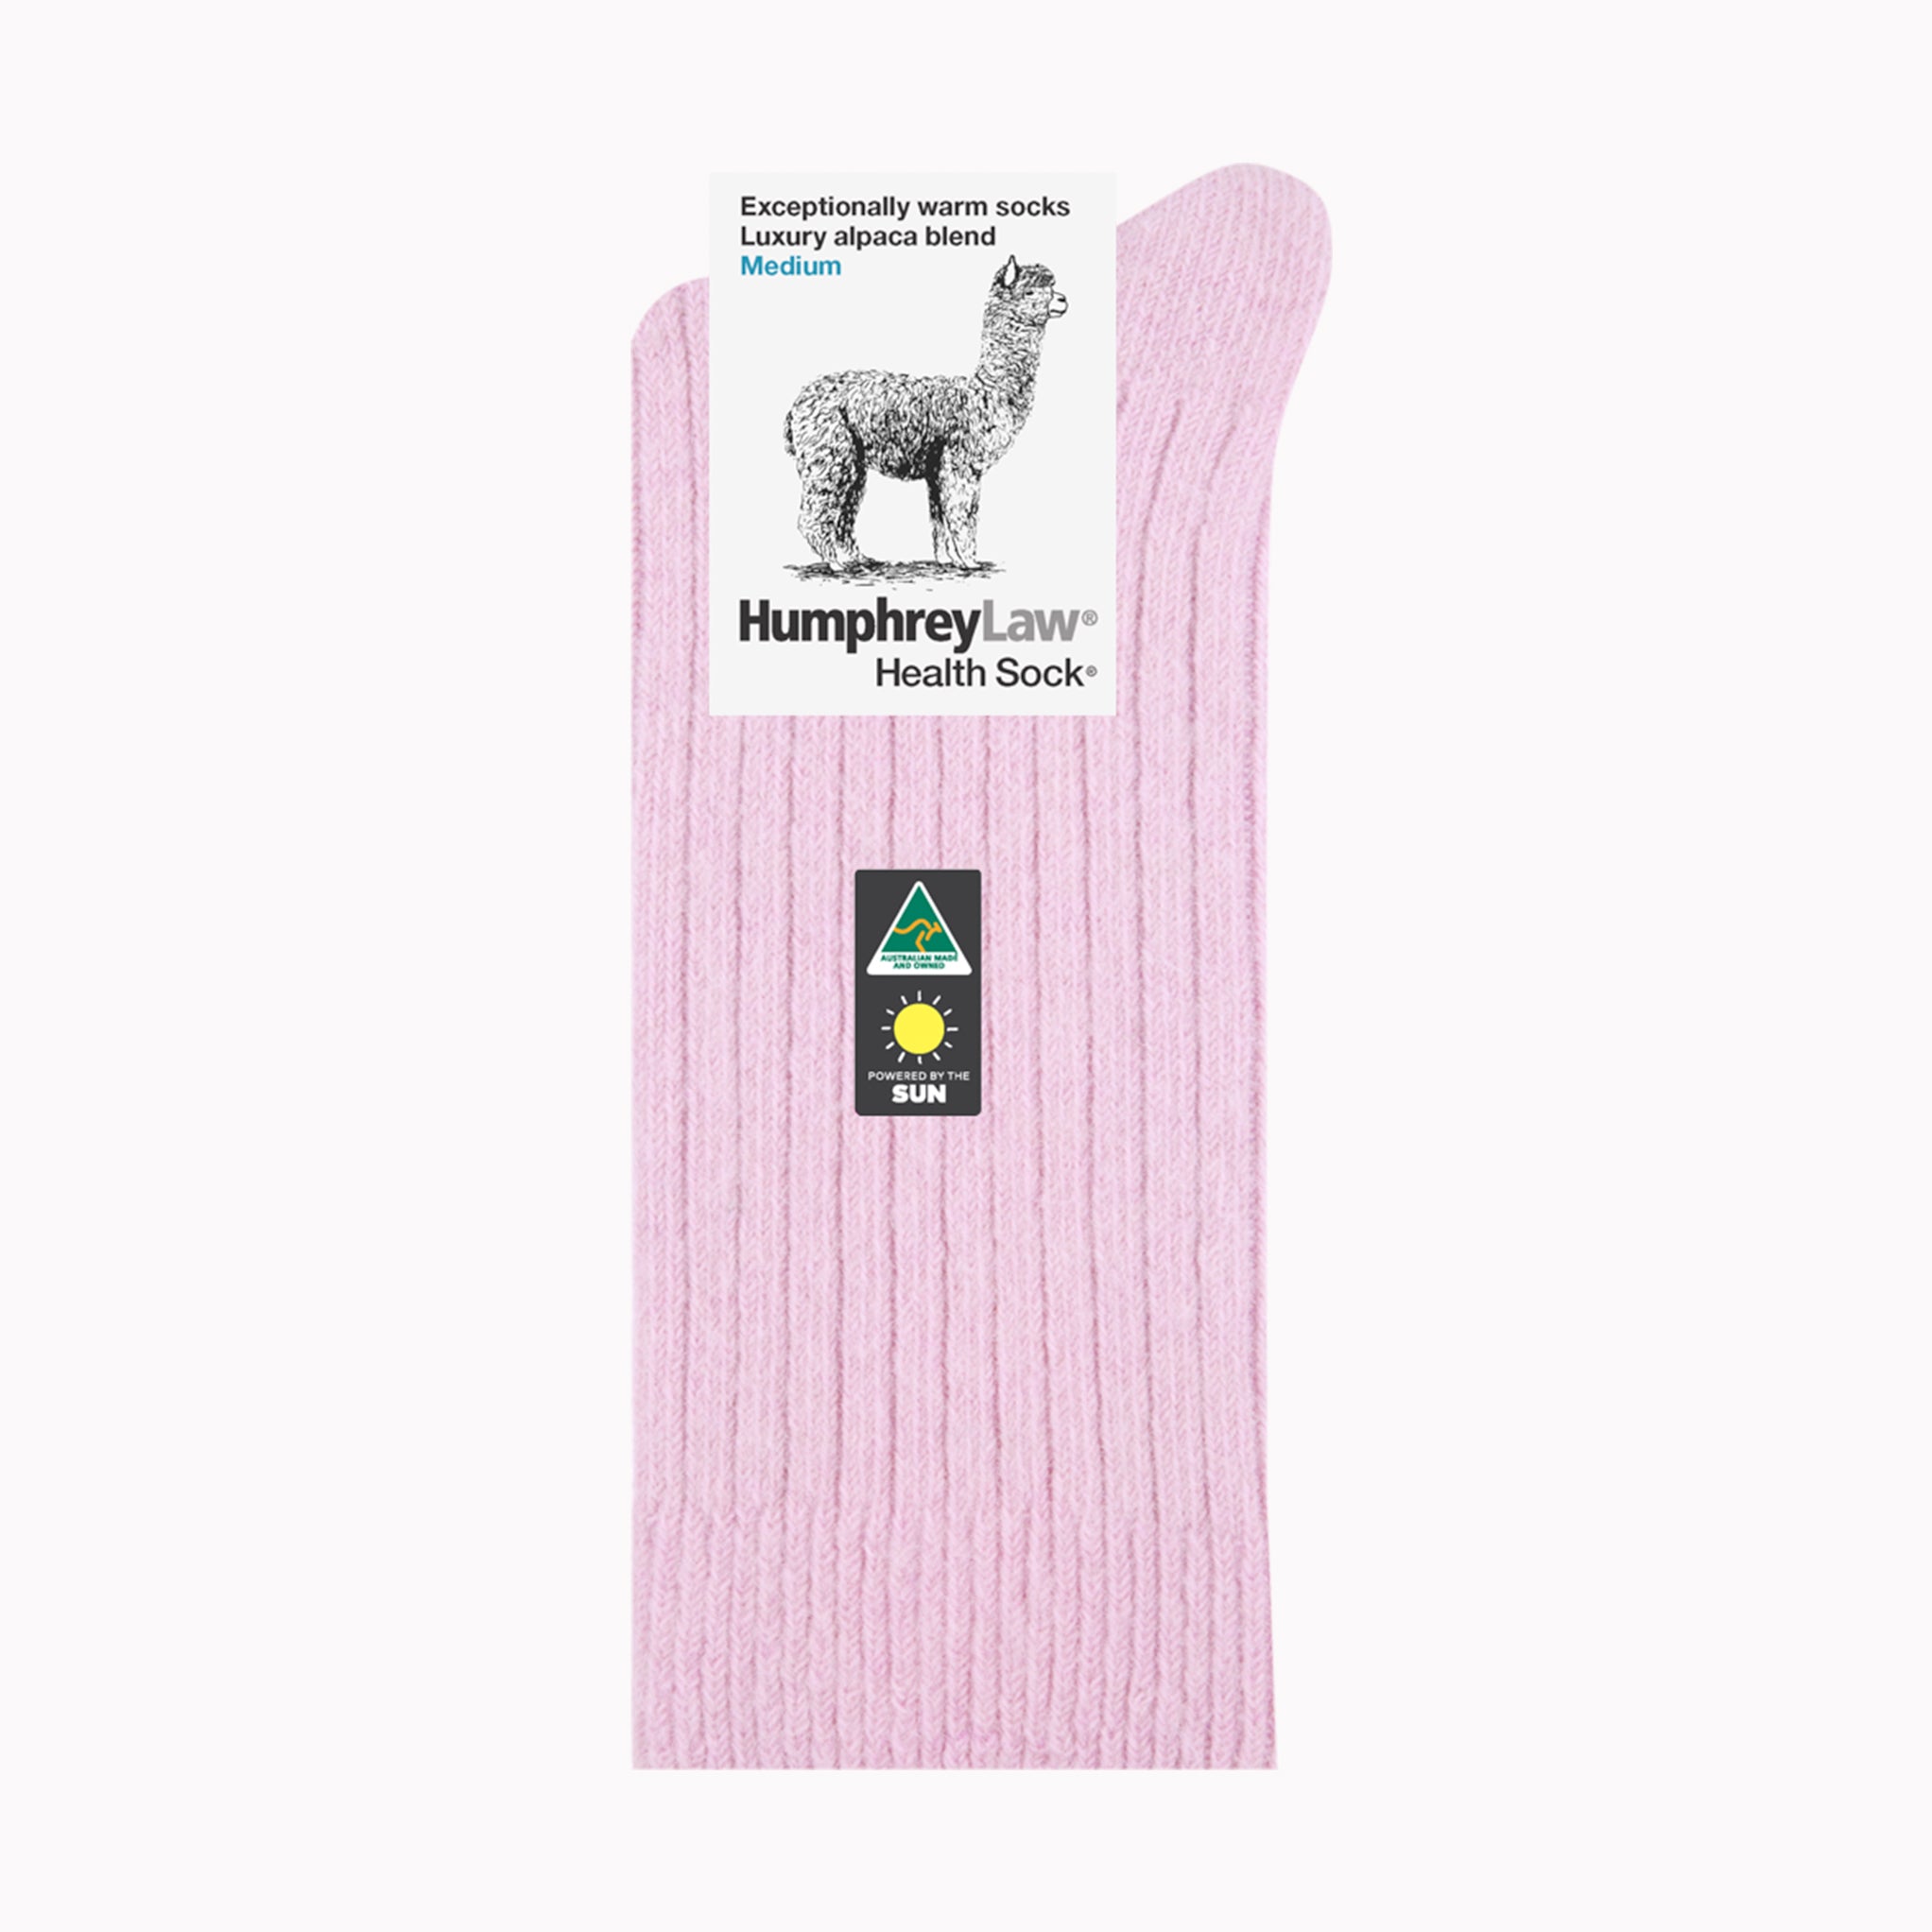 Humphrey Law Health Sock - Powder Pink